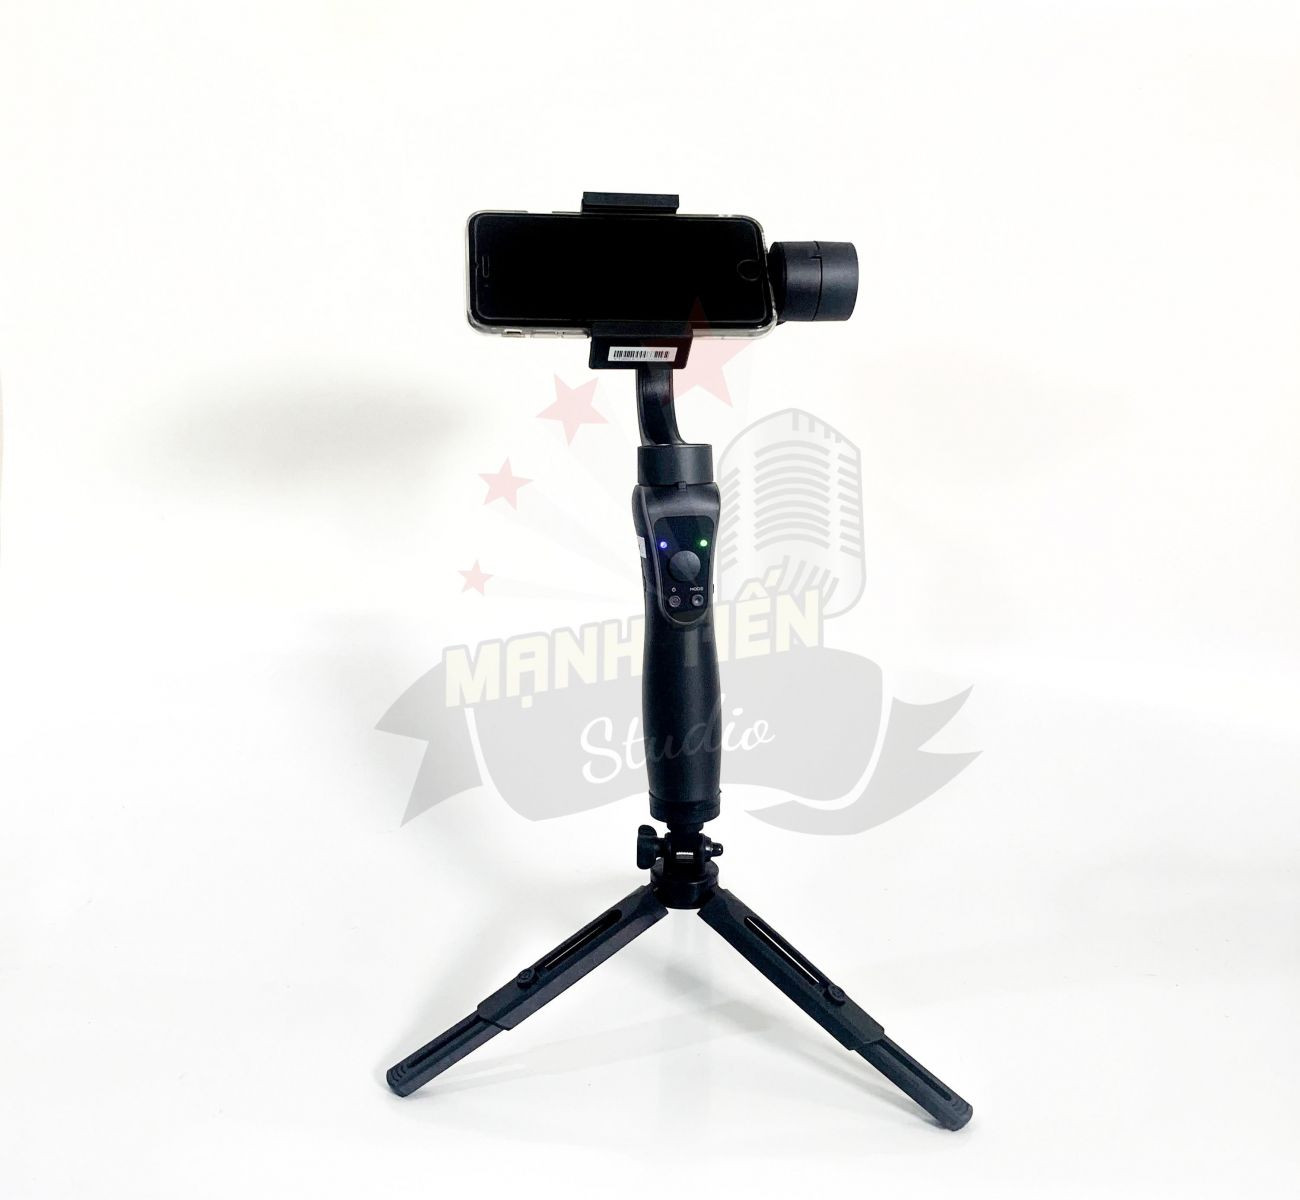 Hình ảnh Giá đỡ 3 chân Tripod Support MT01 xoay 360 độ - giá đỡ cho đèn livestream, máy ảnh, điện thoại tiện dụng, ổn định quay phim chụp hình